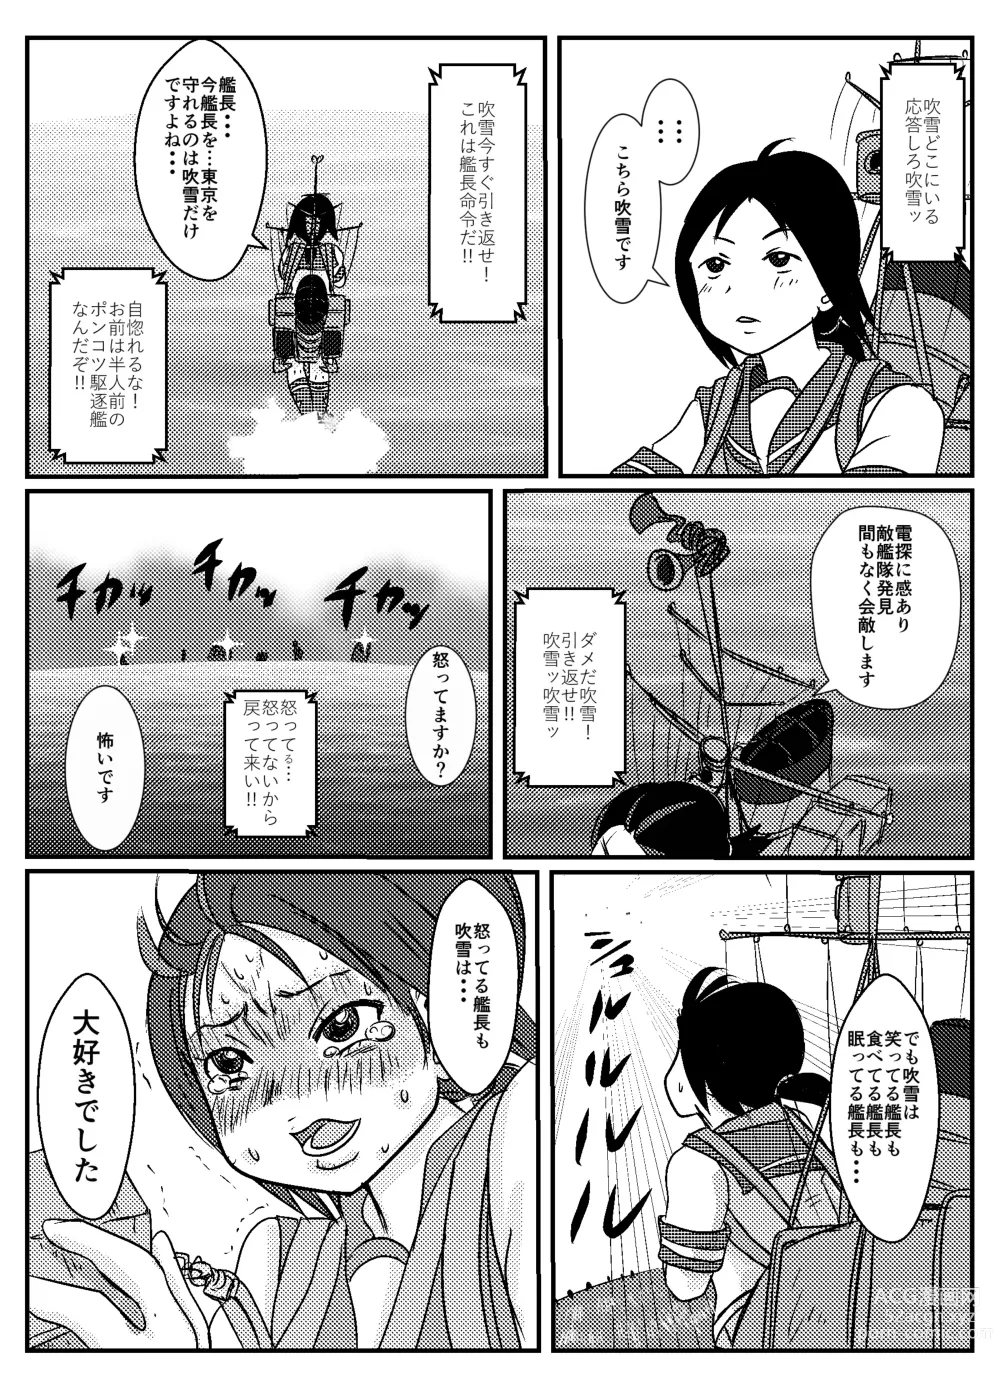 Page 22 of doujinshi Josei Teitoku no Miru Yume wa